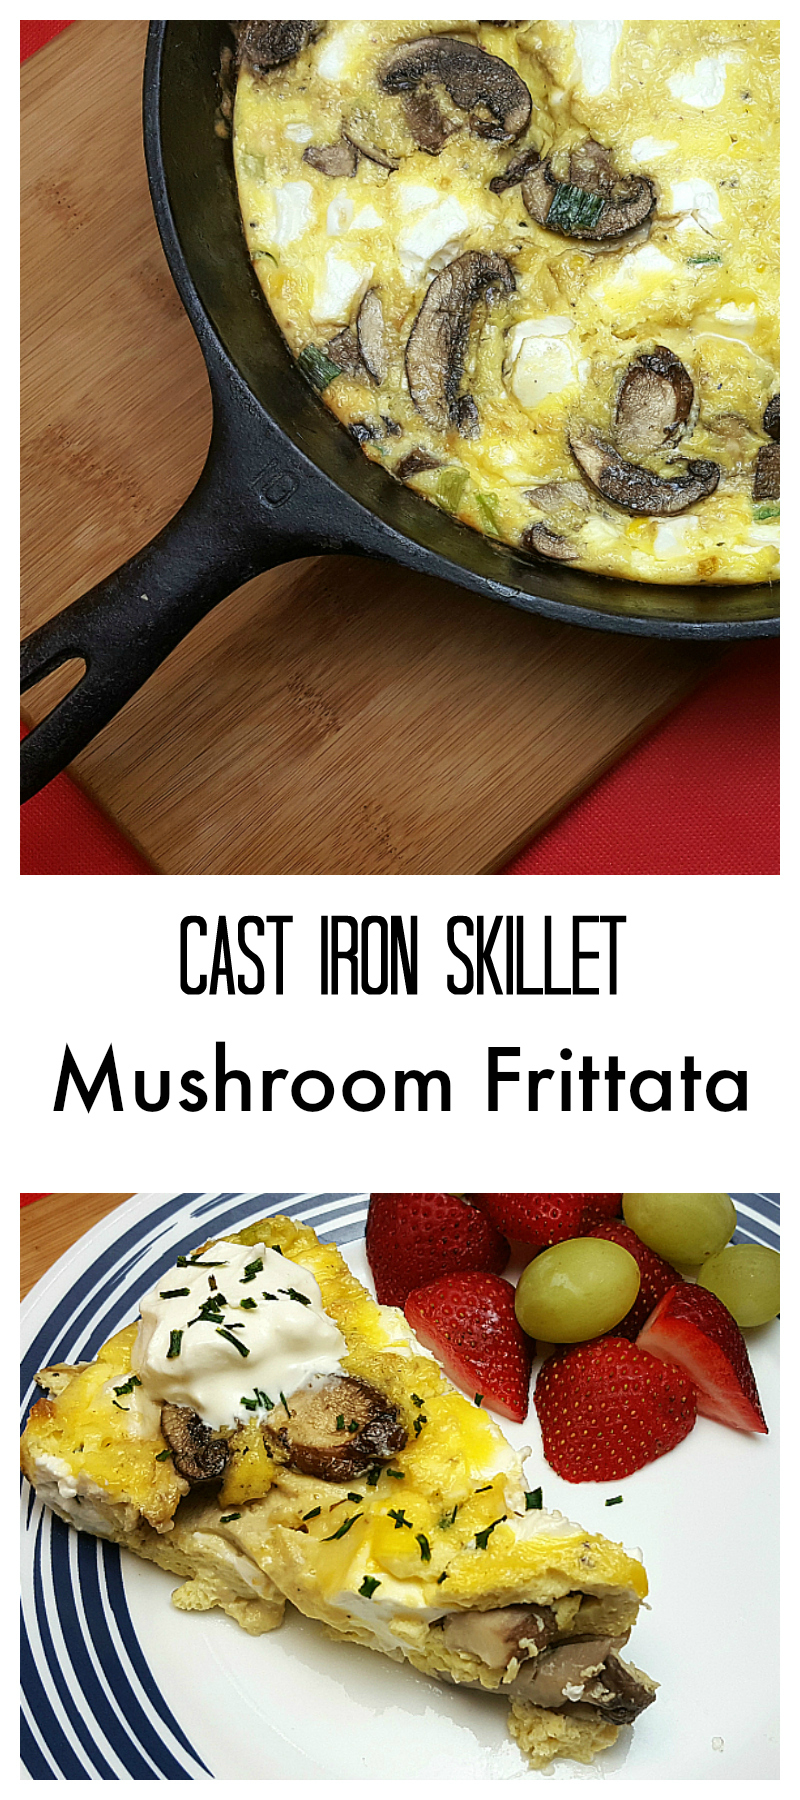 Cast Iron Skillet Mushroom Frittata Recipe